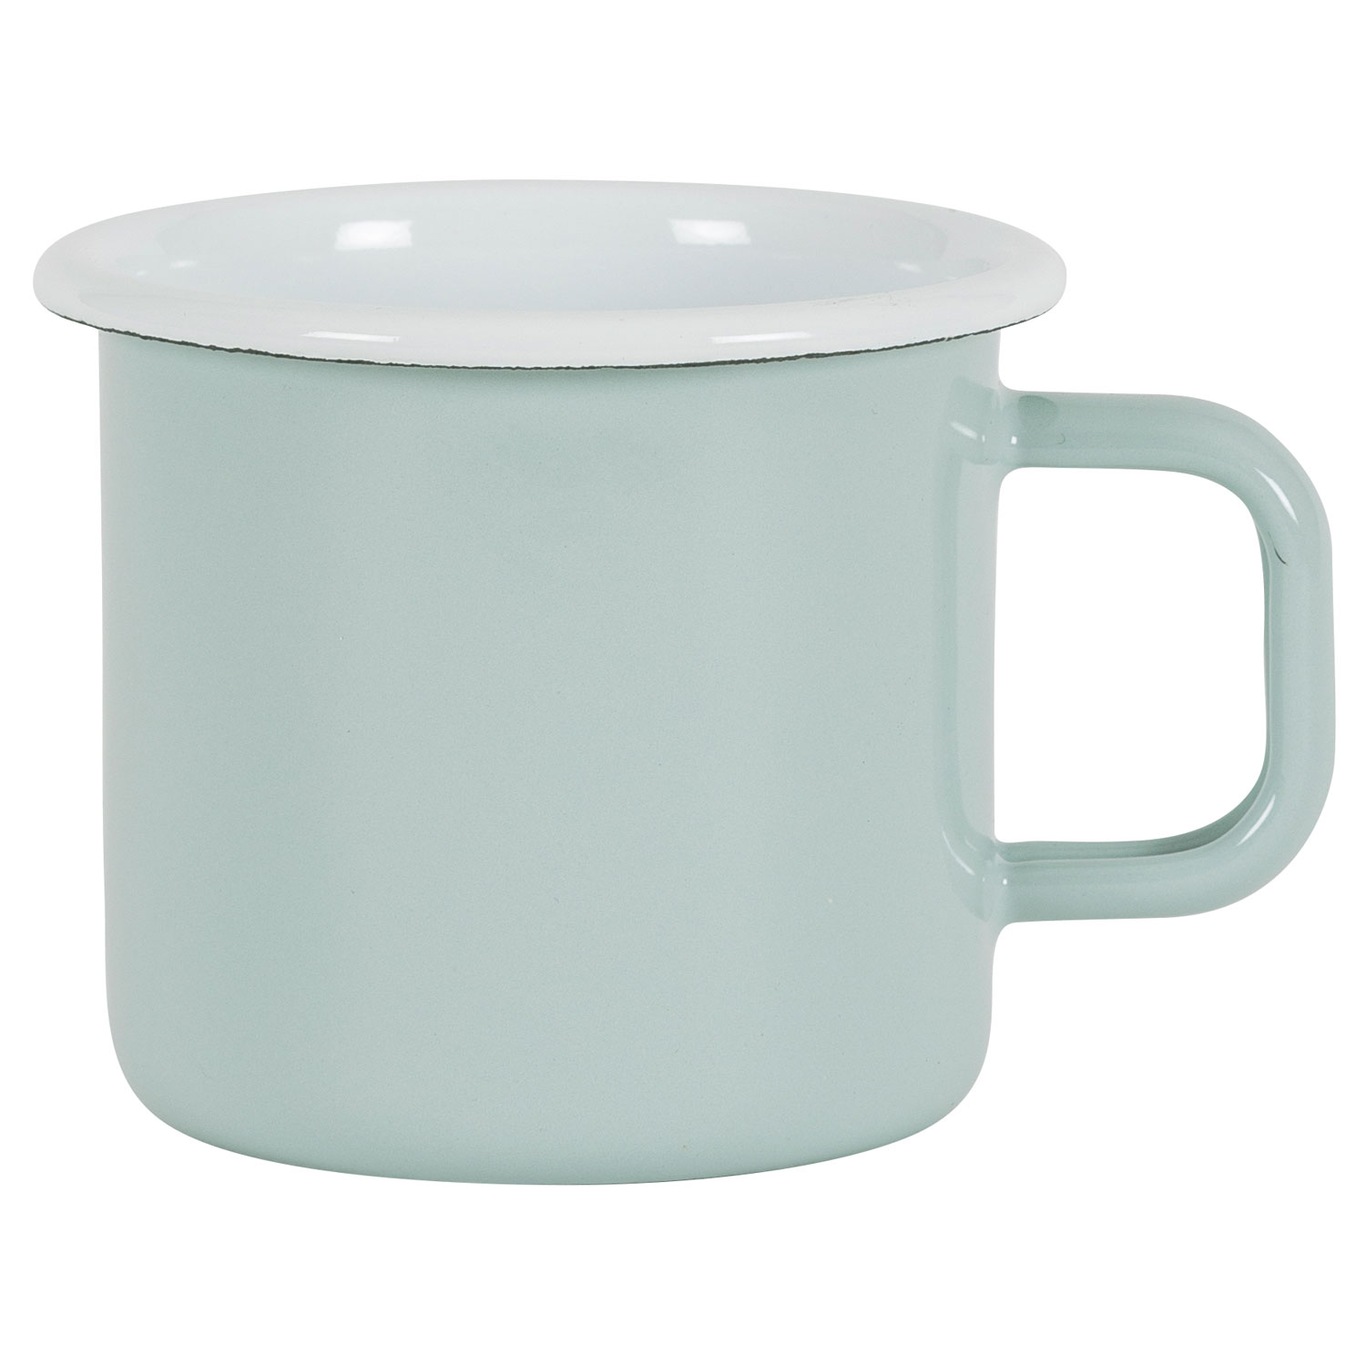 Mug 8 cm, Green Orion